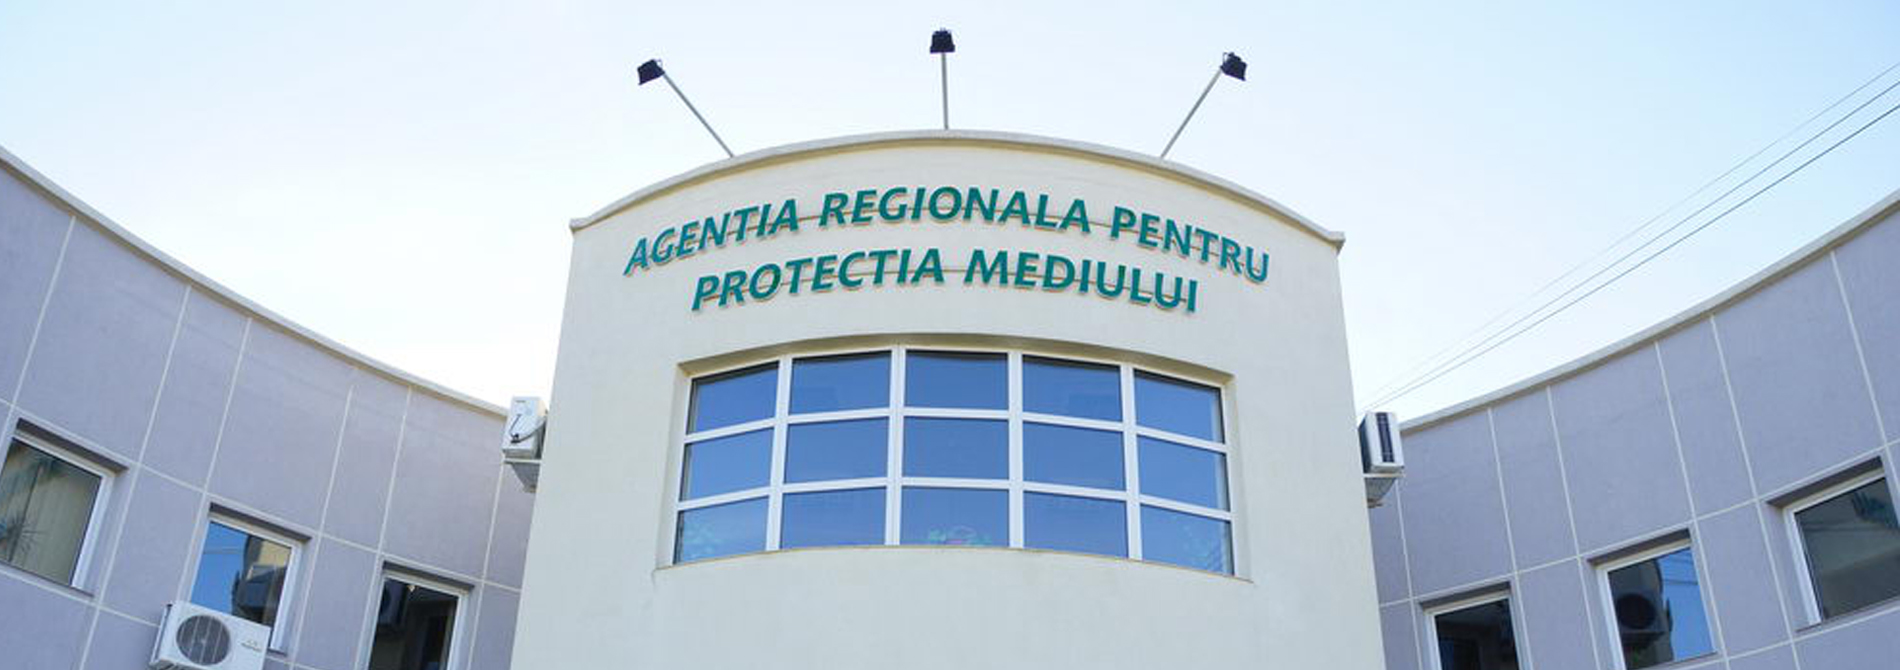 <h2>Agenția Regională pentru Protecția Mediului, Timișoara</h2><p></p>